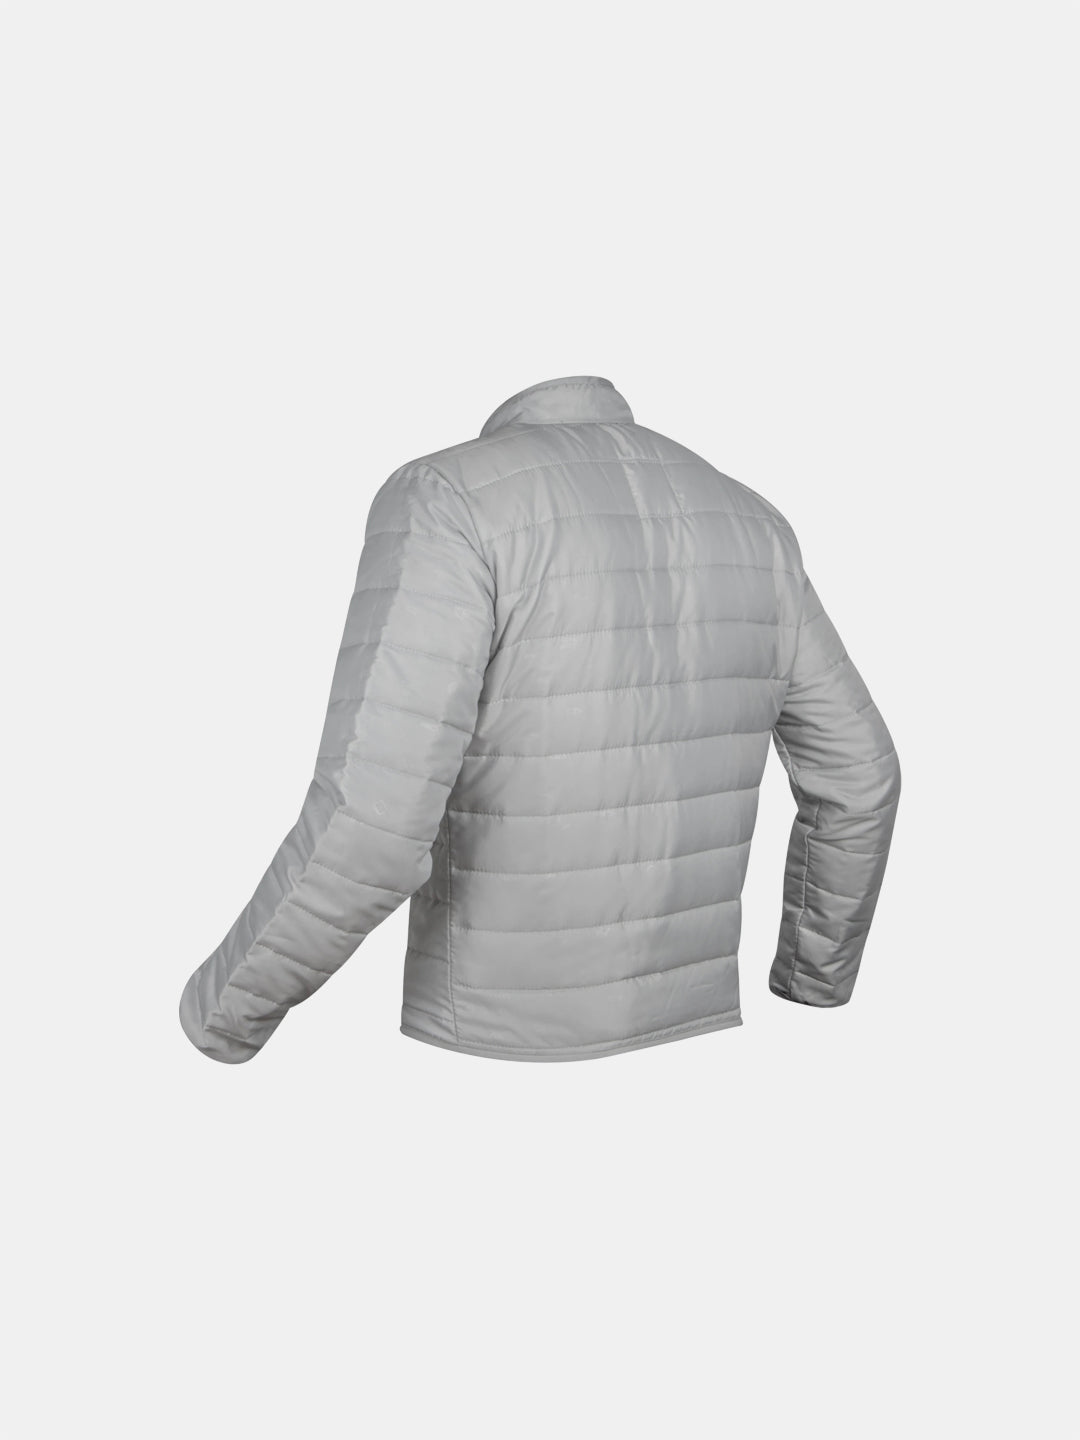 Rynox Swarm Thermal Jacket - Grey